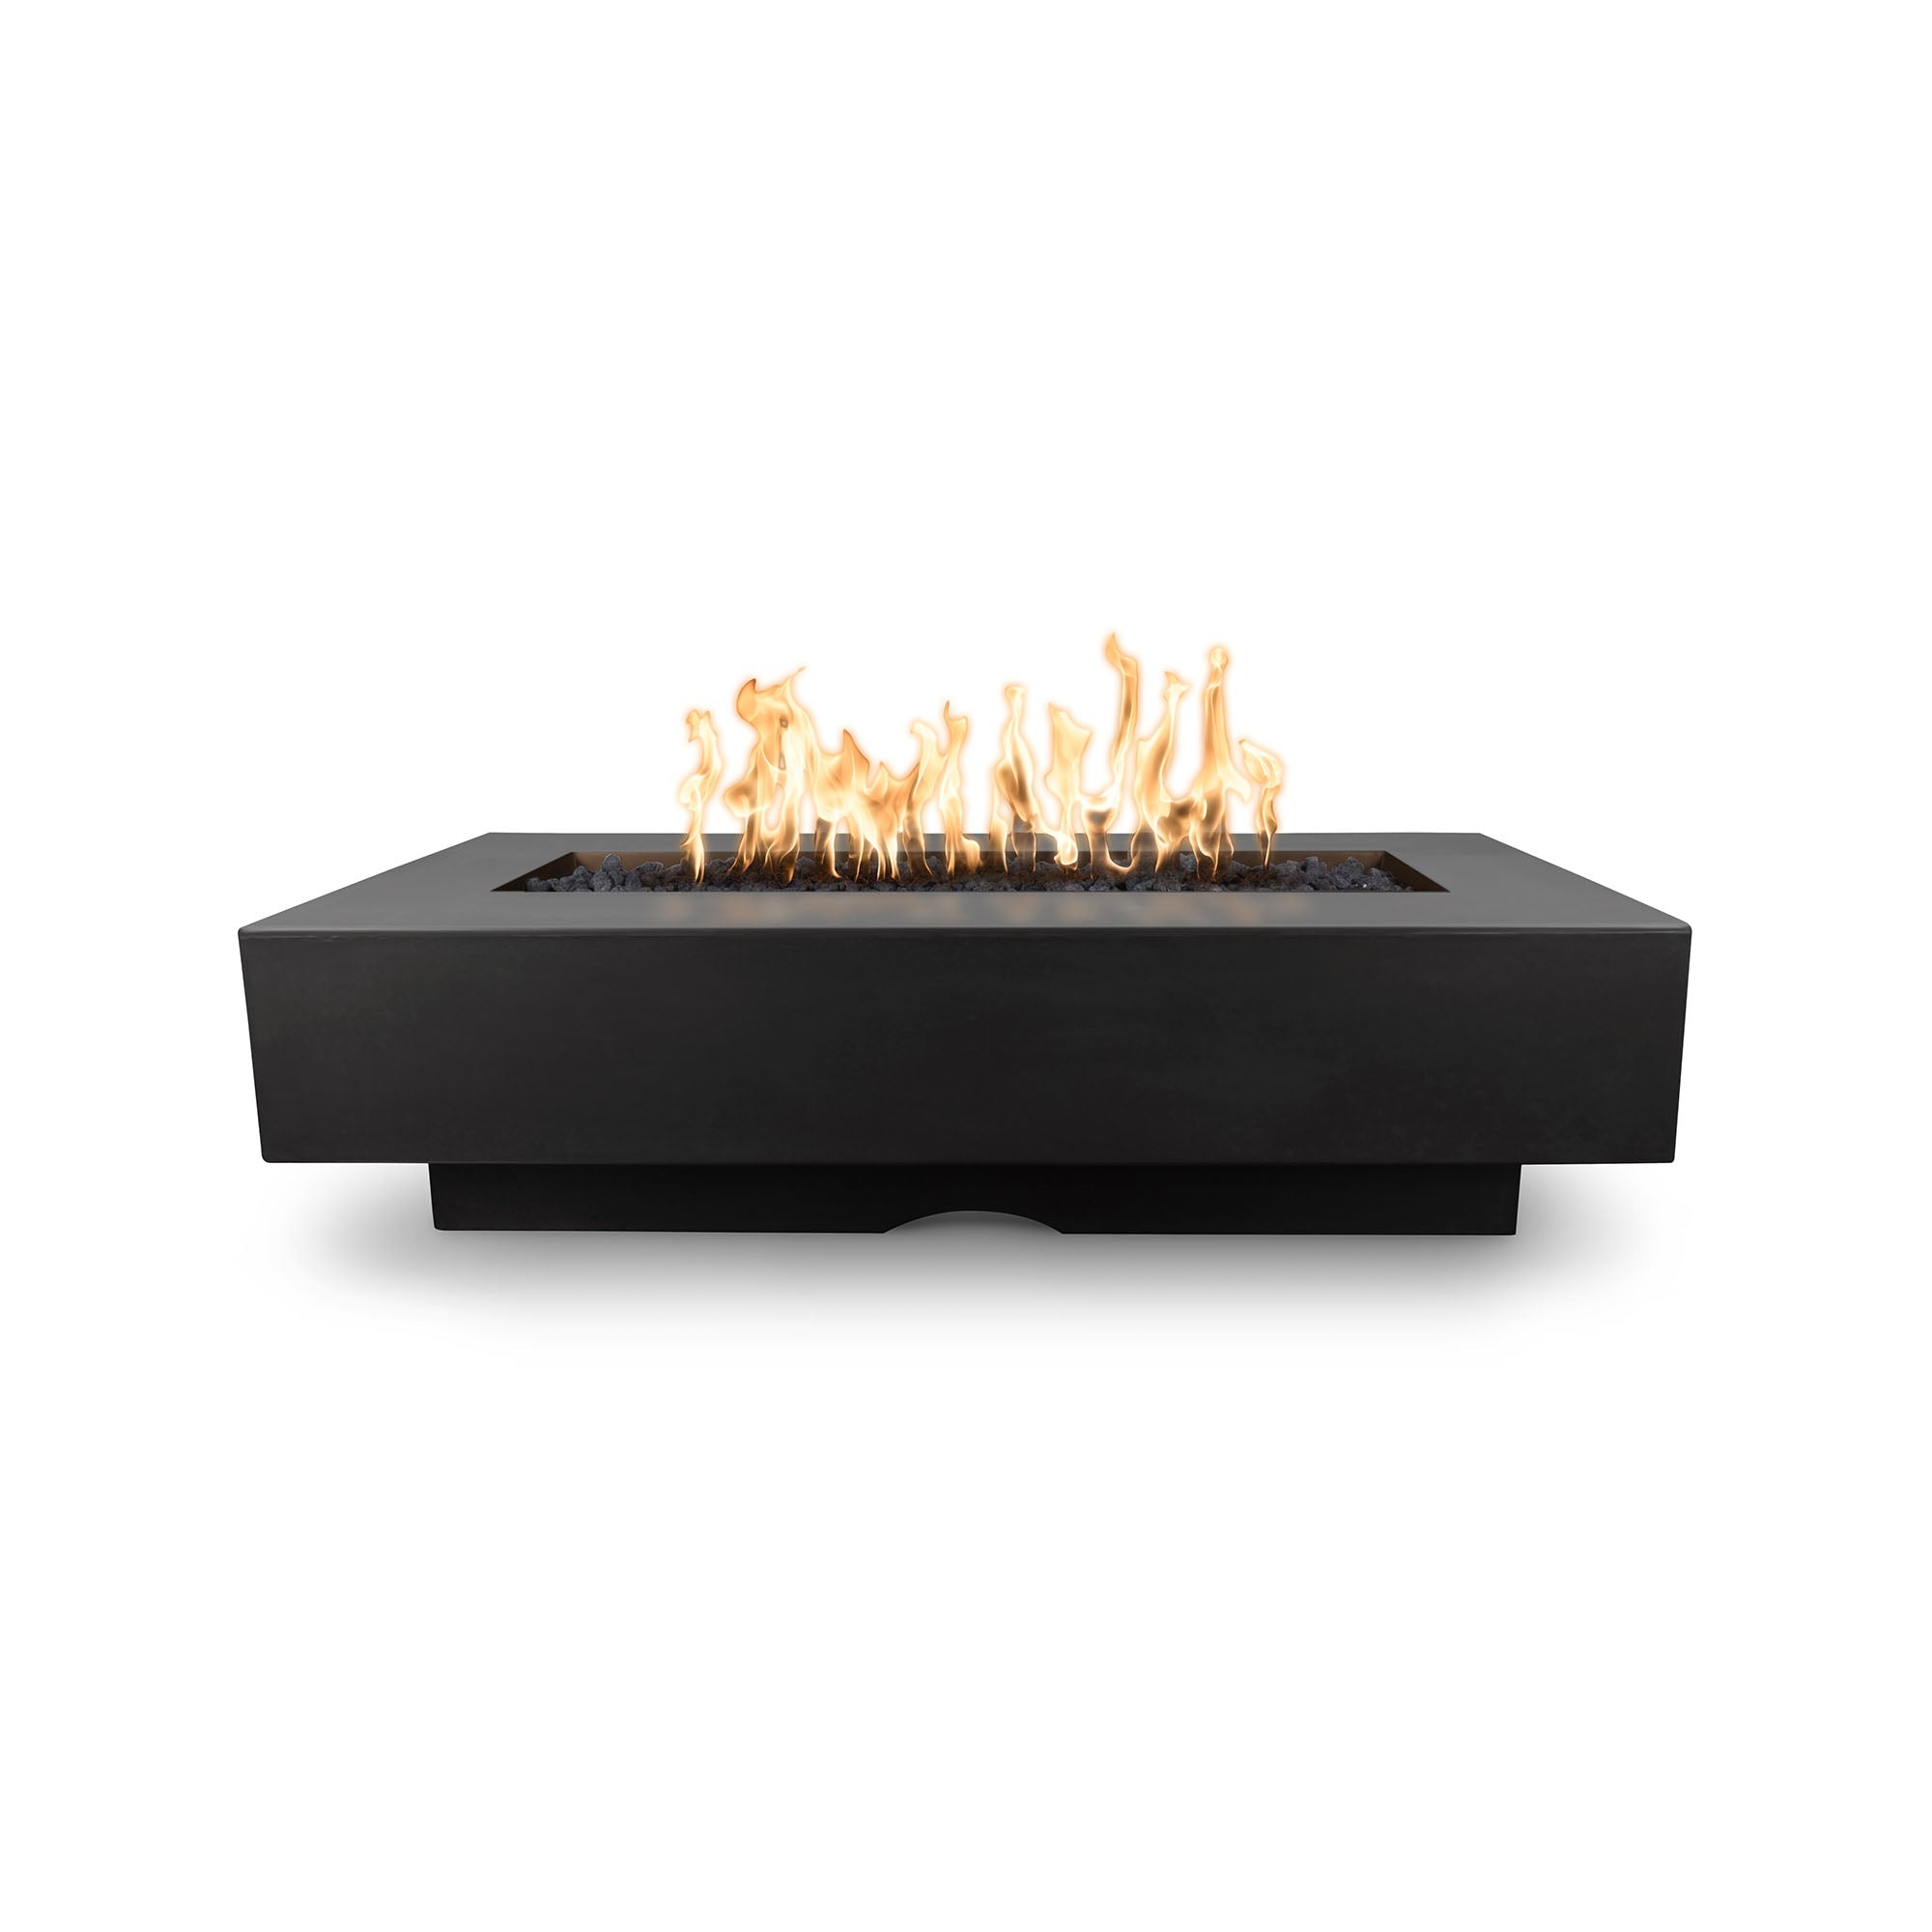 The Outdoor Plus 84" Del Mar GFRC Concrete Rectangle Fire Pit Table in Black Lit